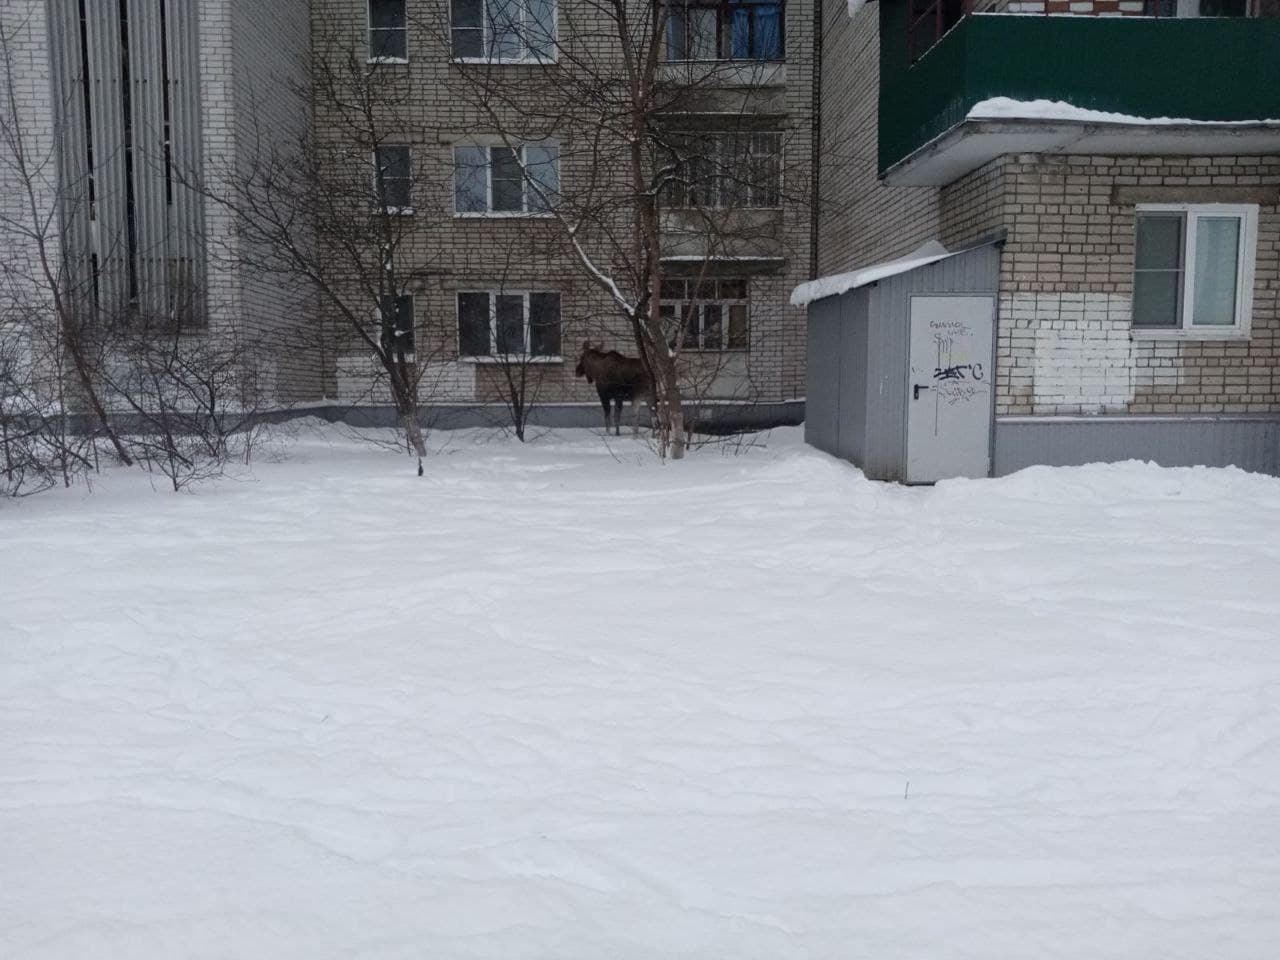 Огромный лось гуляет у многоэтажек в Ярославле: кадры